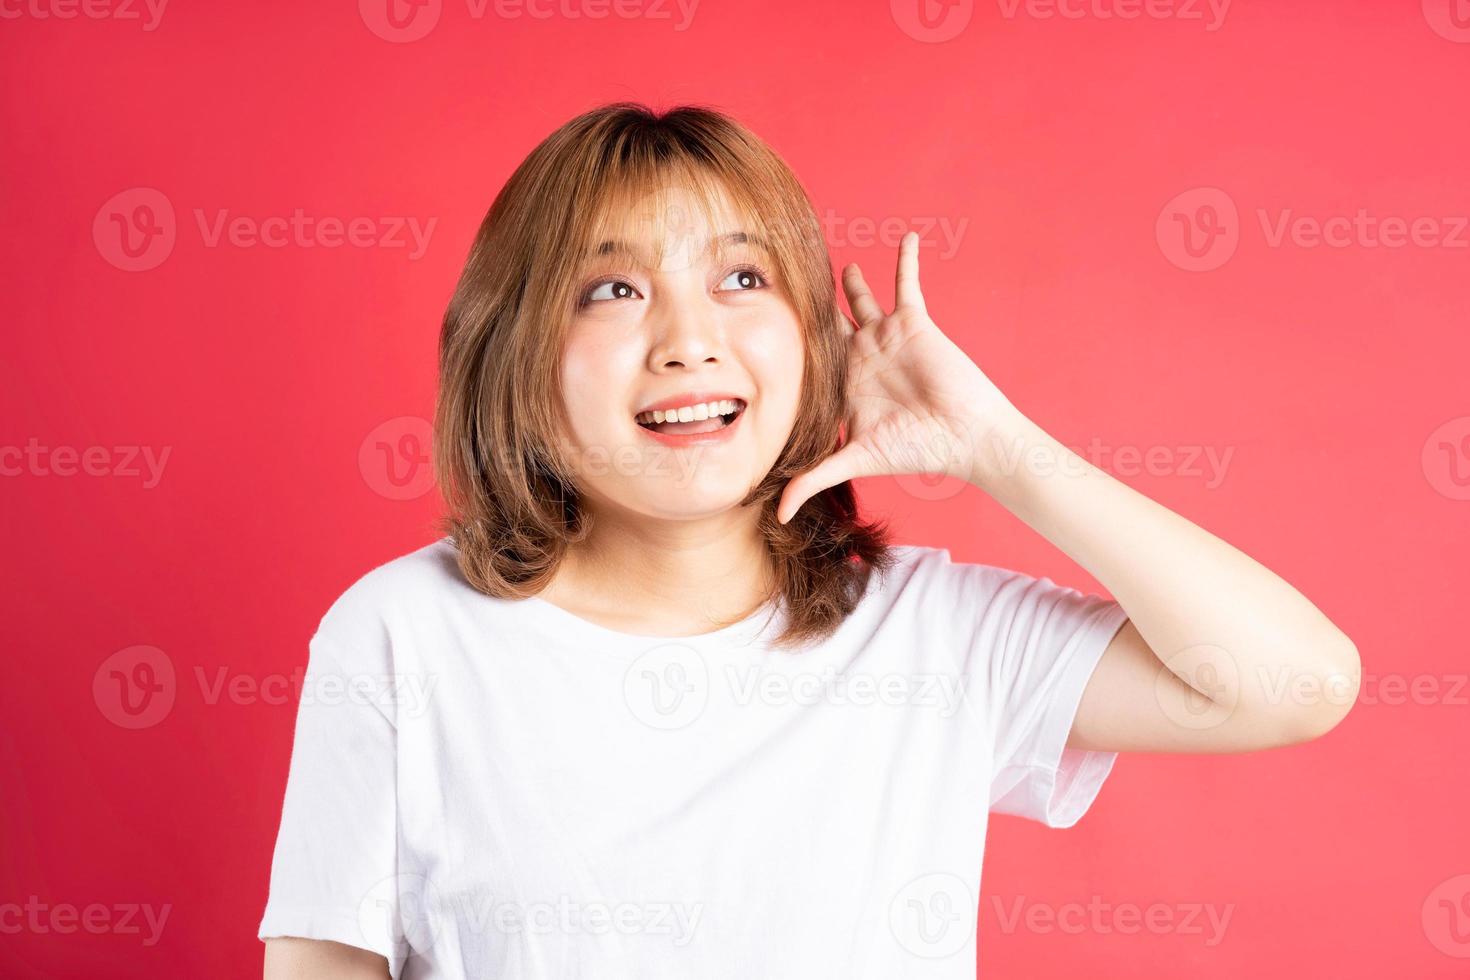 jovem garota asiática com gestos e expressões alegres no fundo foto